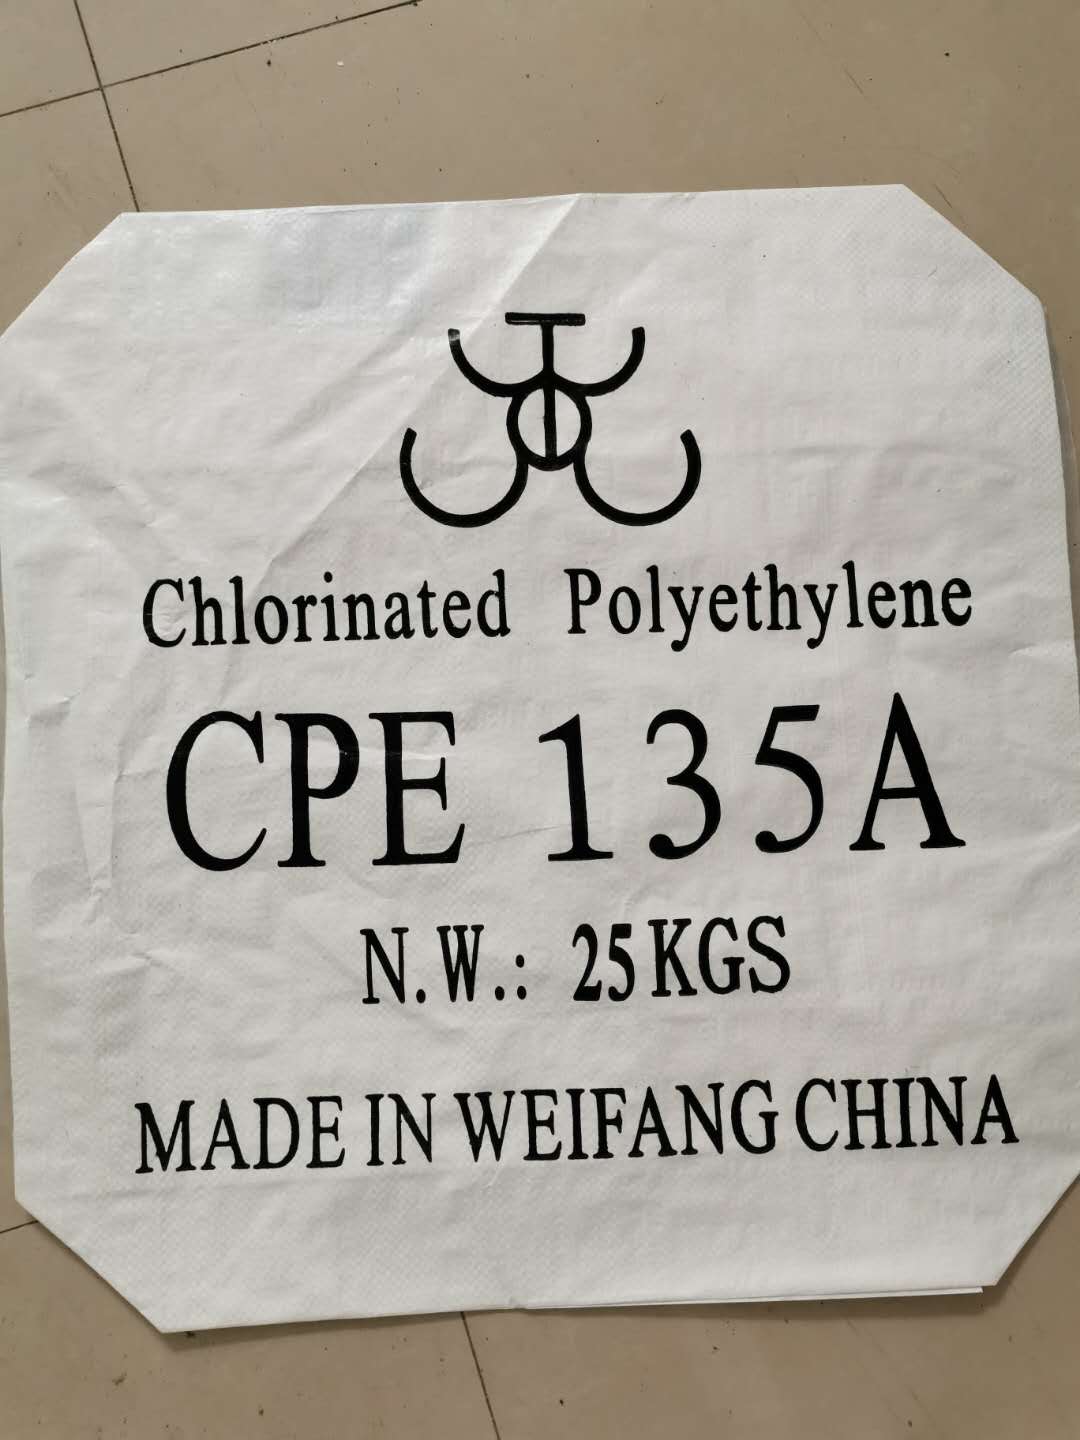 Ndizivisei: chii chinonzi CPE / chlorinated polyethylene?